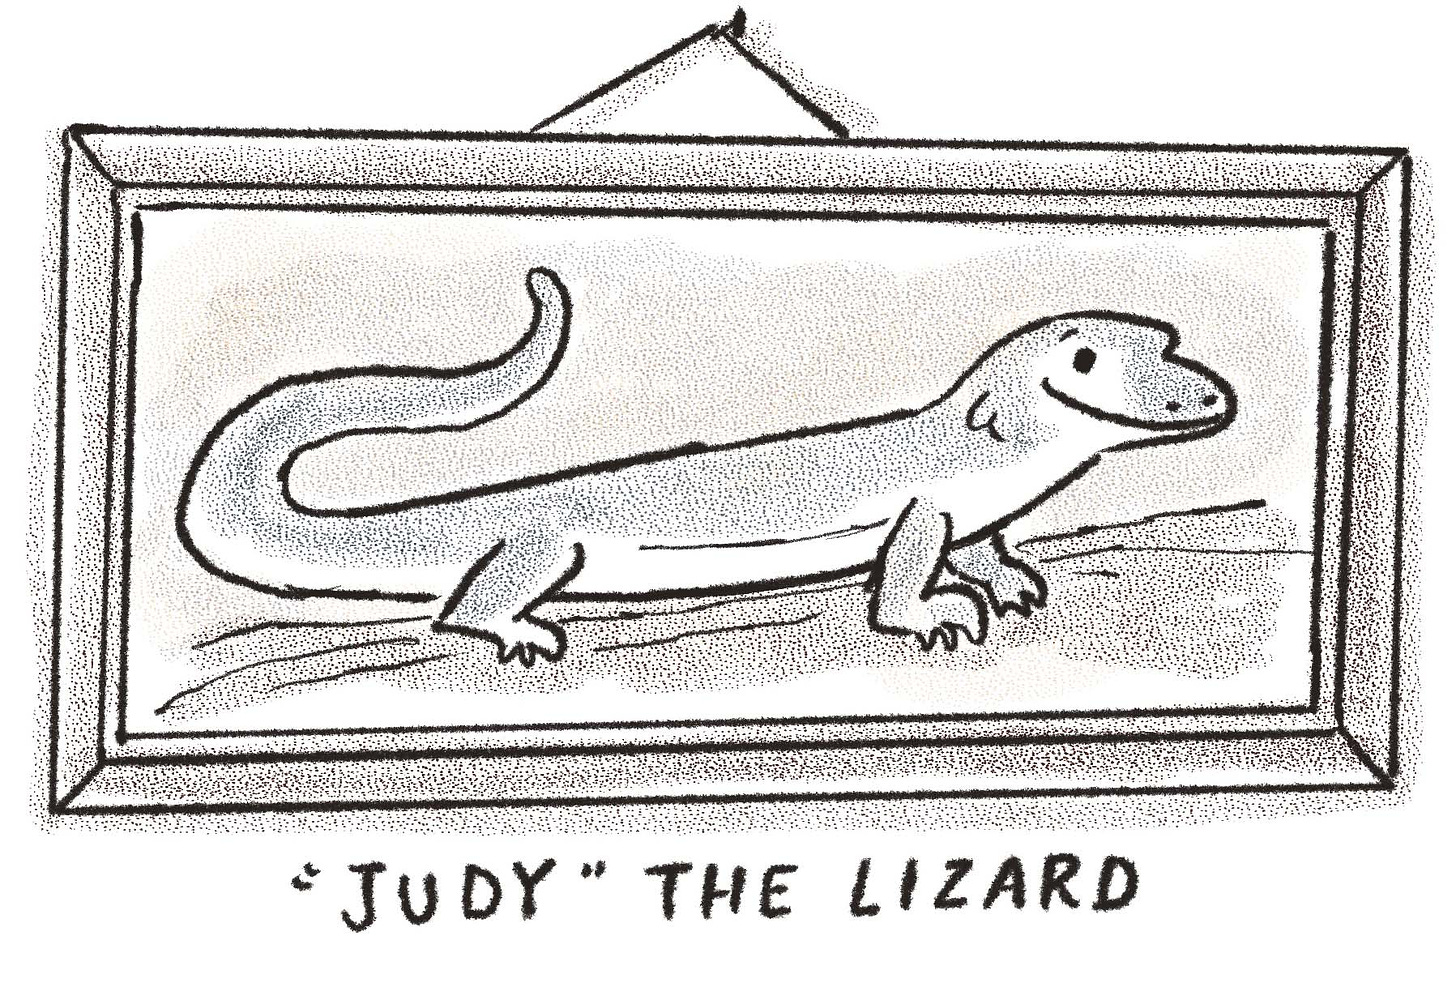 illustration by Kayla Stark of Beatrix Potter's pet lizard Judy